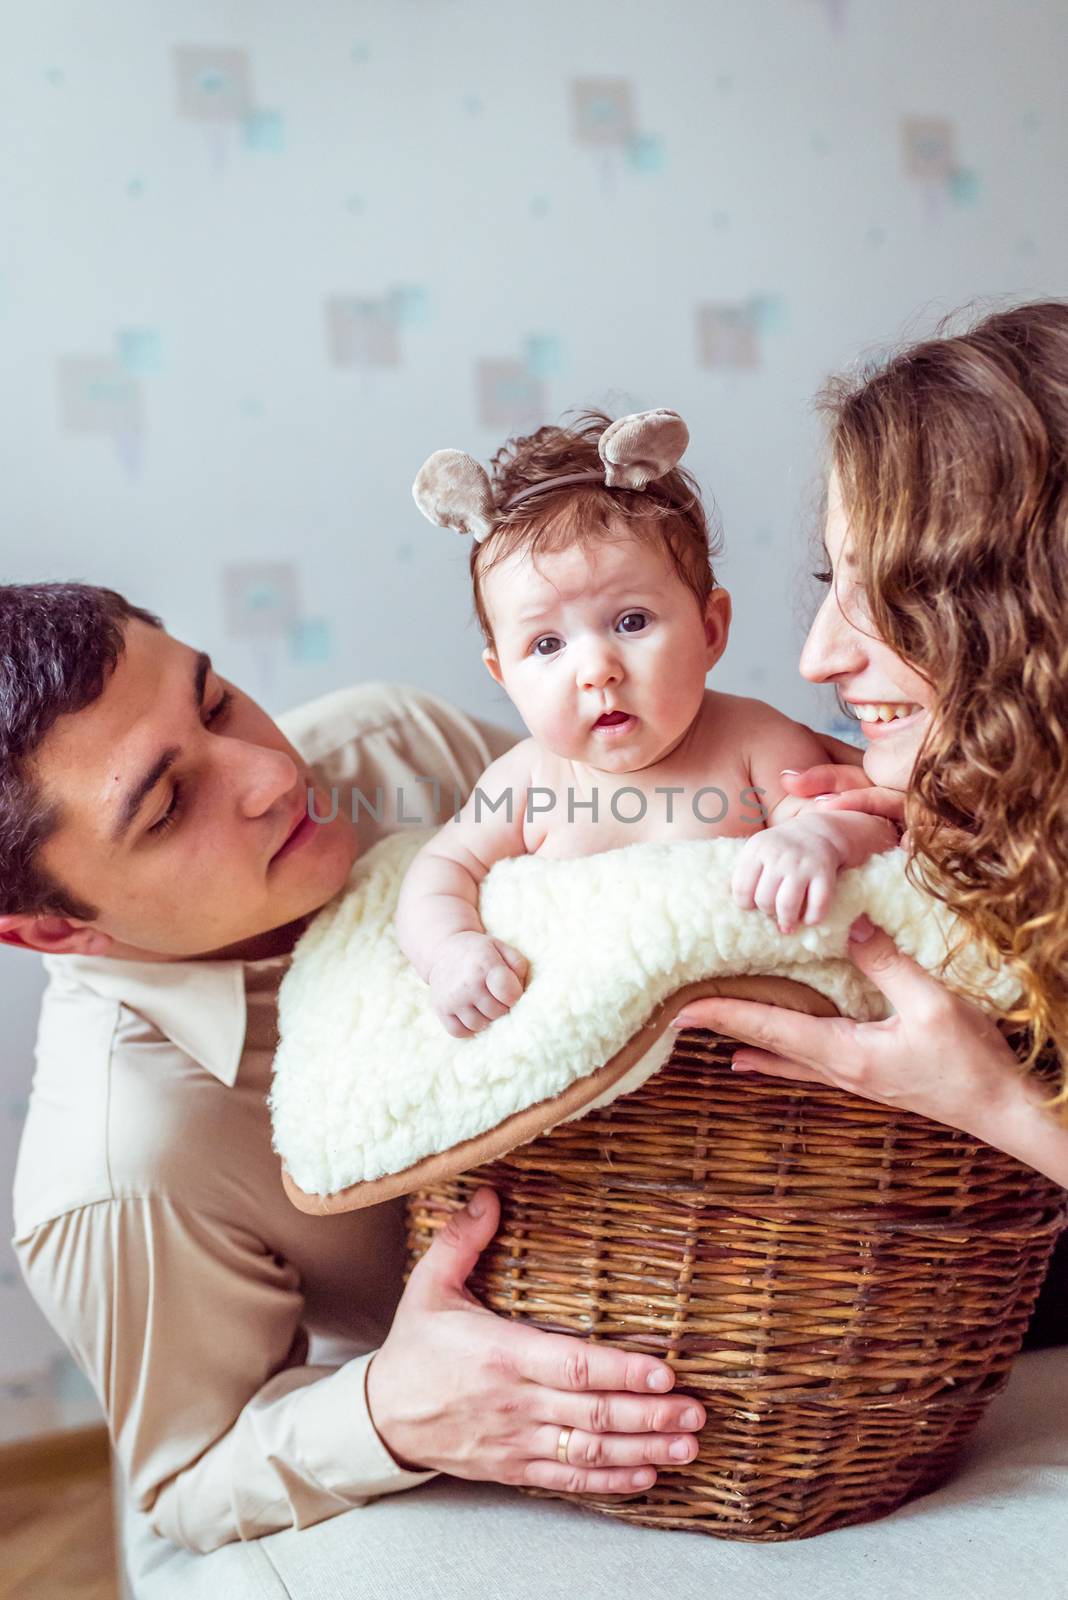 baby sitting in a wicker basket by okskukuruza